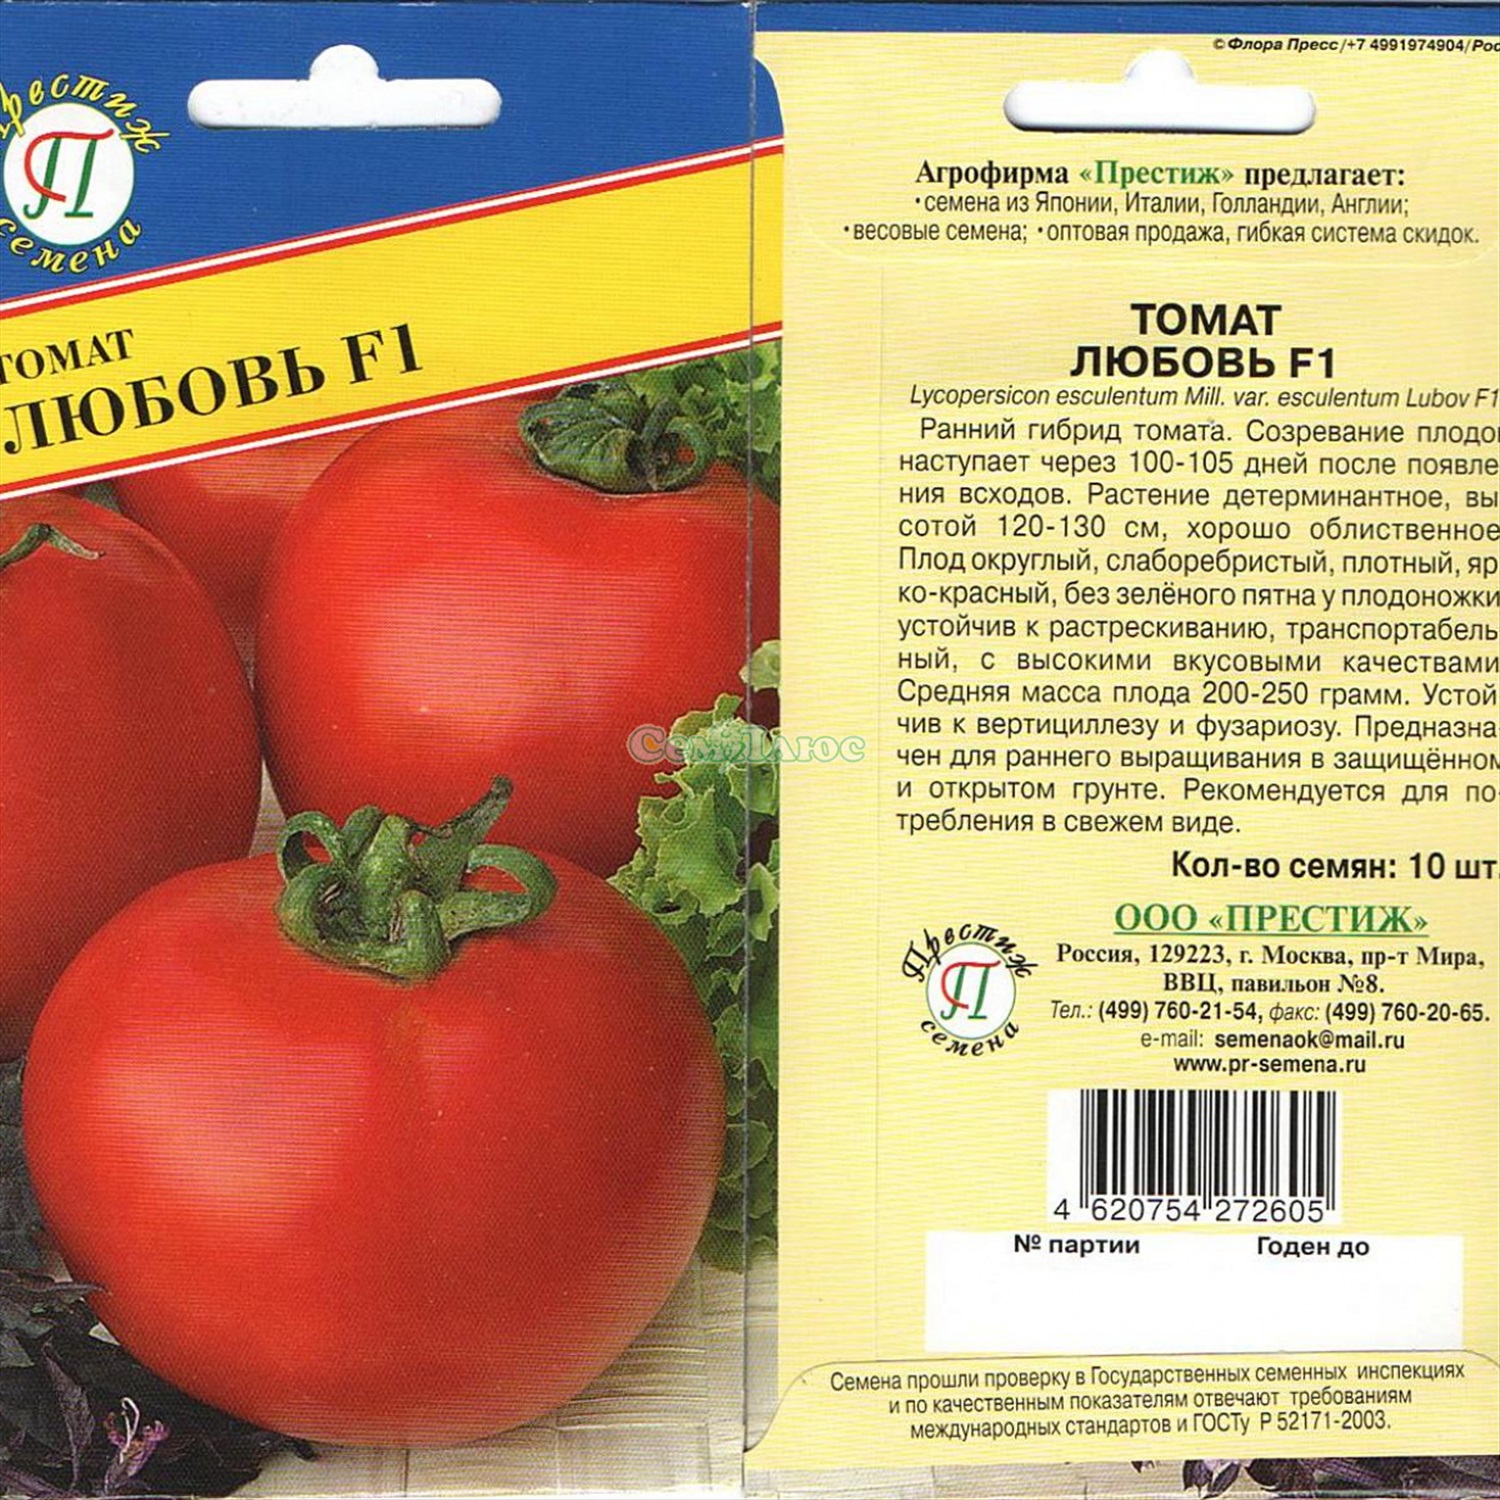 Известный среди наших соотечественников томат — русская империя f1: подробное описание сорта